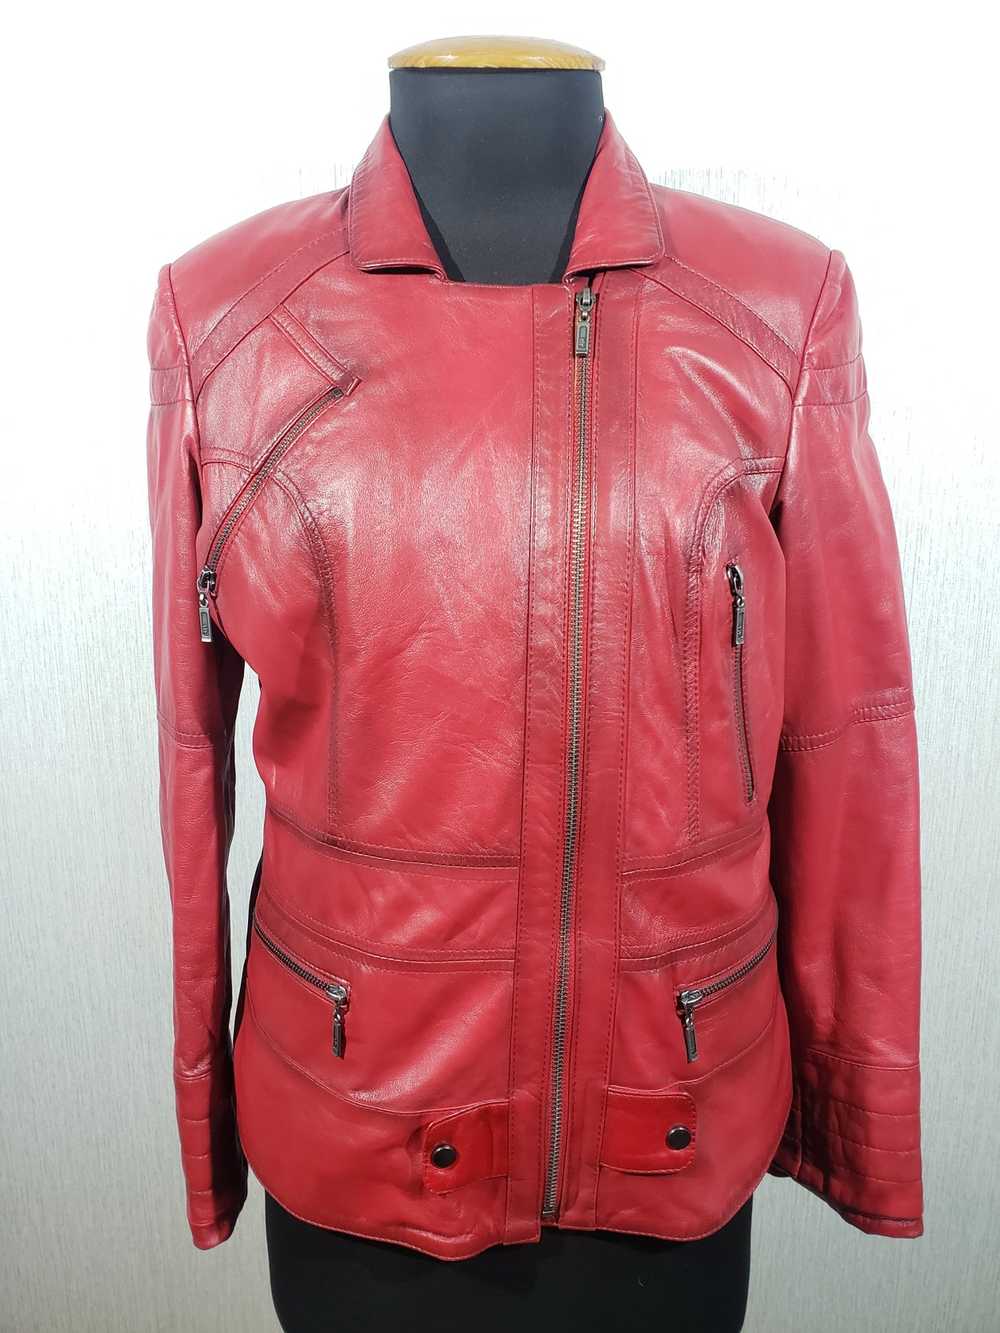 Designer × Rare Stylish red leather women's jacke… - image 1